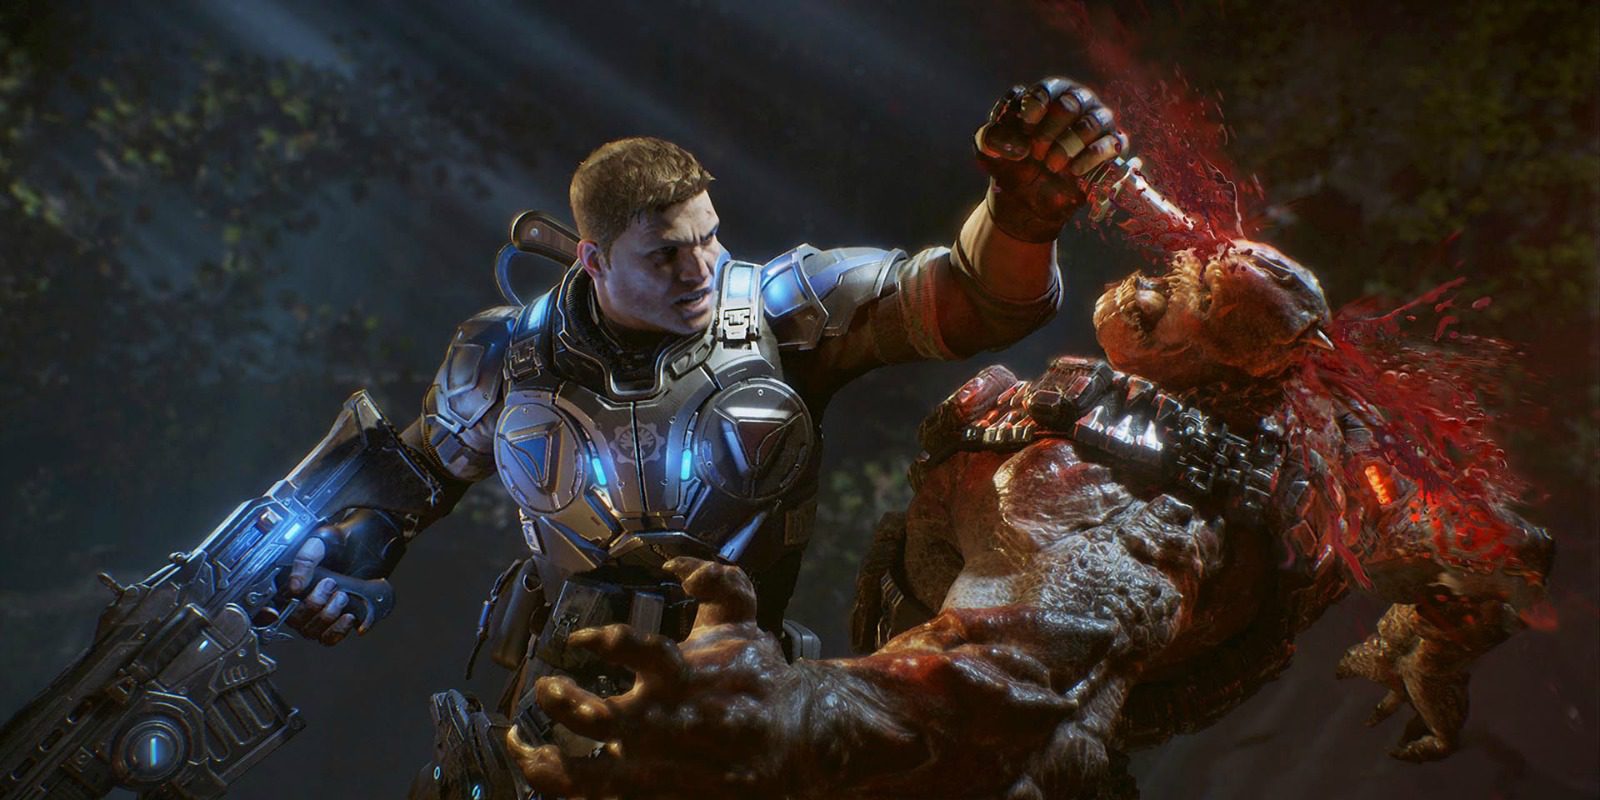 El nuevo vídeo de la campaña de 'Gears of War 4' cuenta con Markus Fenix